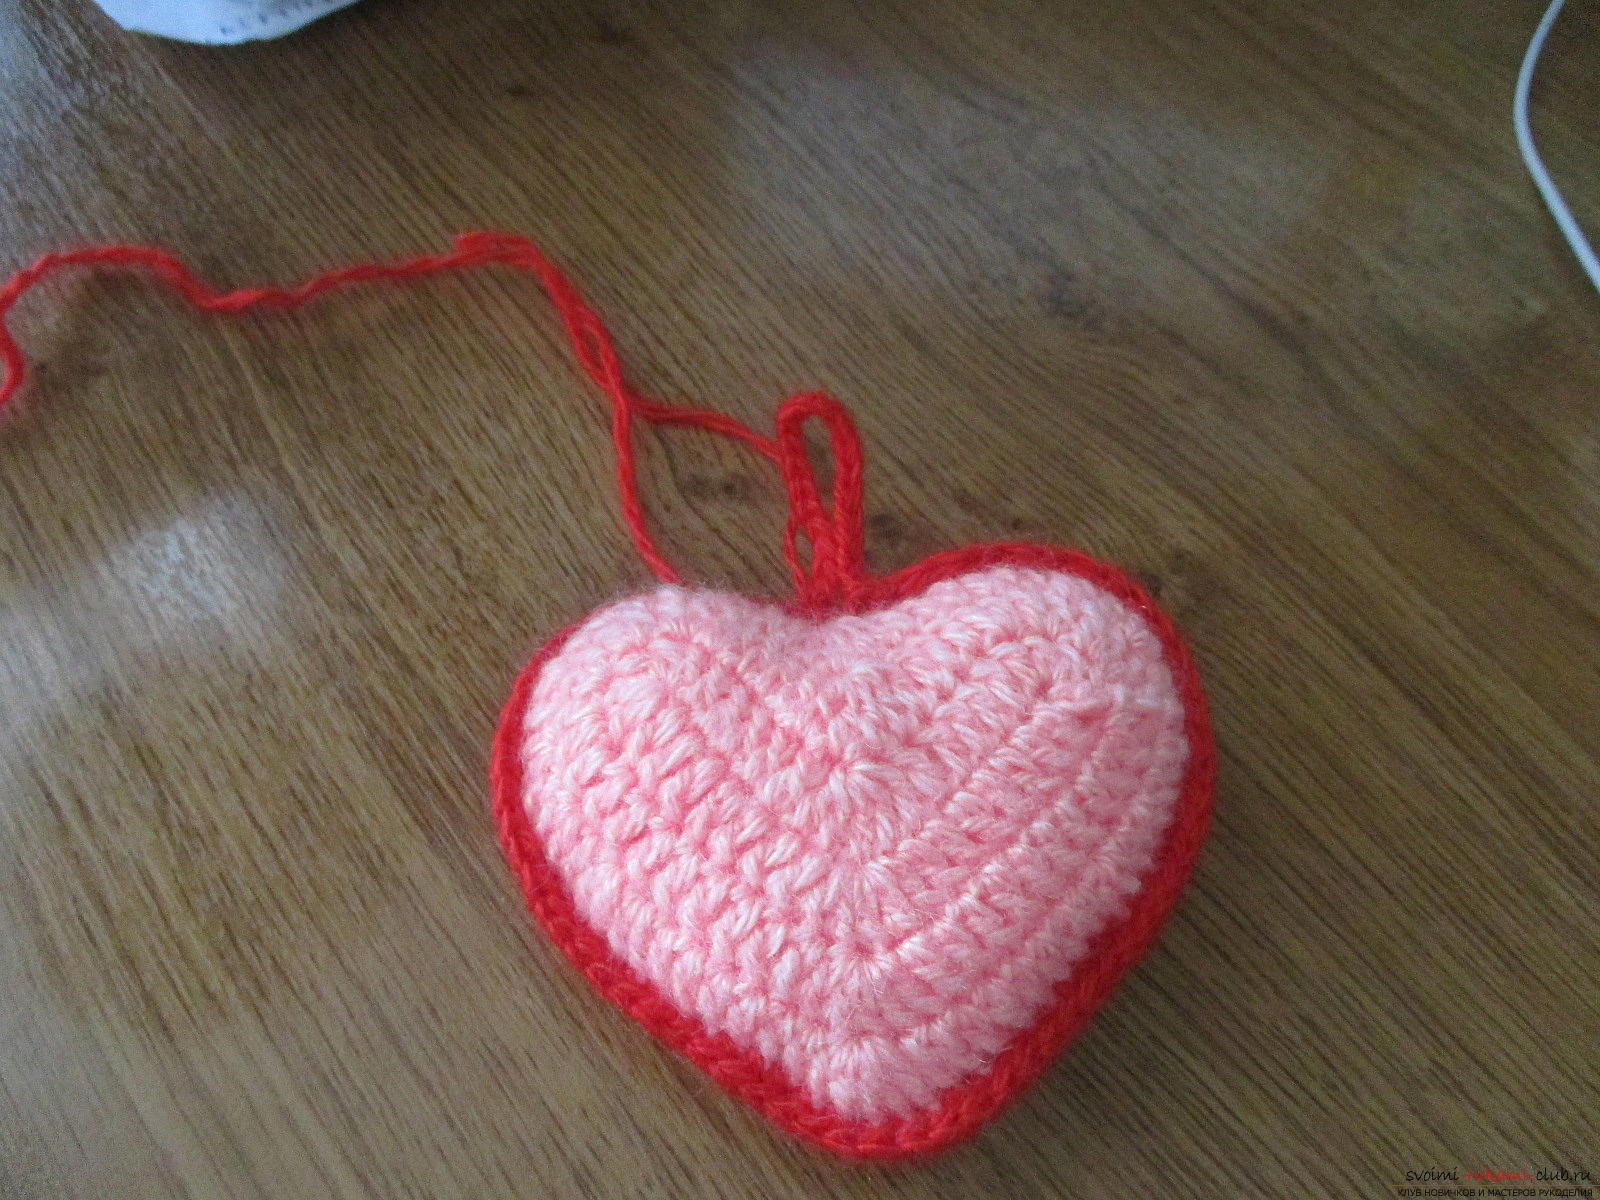 Deze masterclass leert je hoe je je eigen valentines kunt maken - een cadeau voor 14 februari. Fotonummer 18